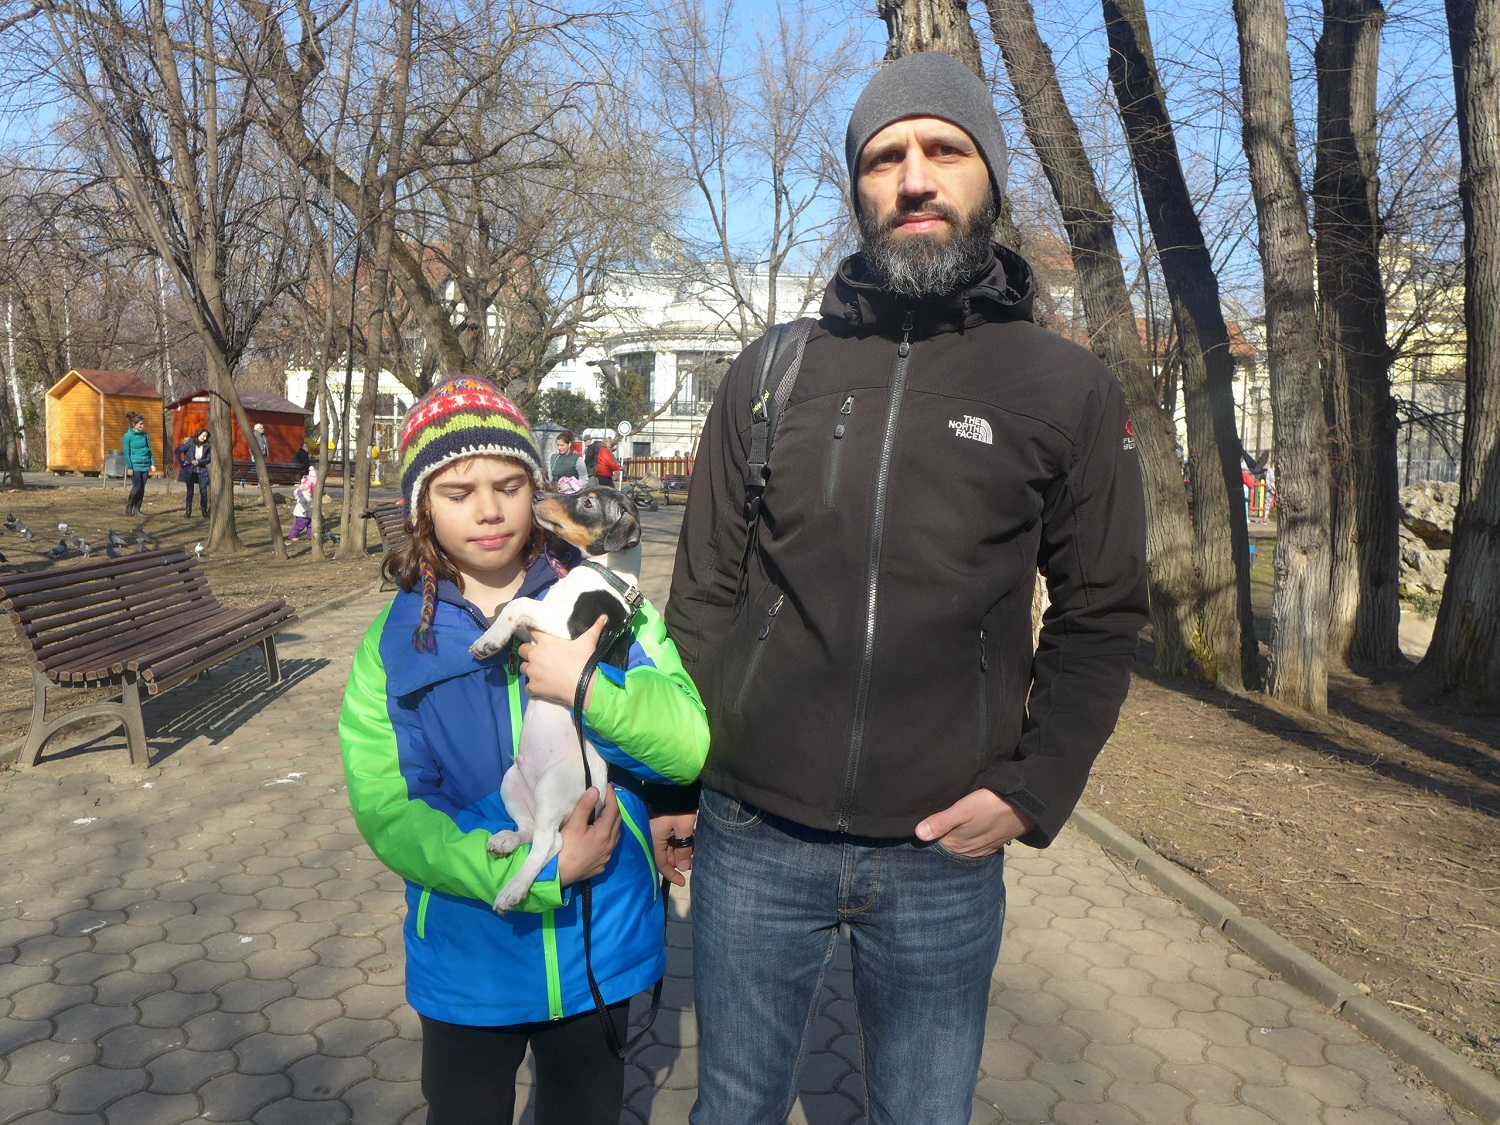 Orlando et son fils David promènent leur chien Jack, dans le parc Ioanid, dans le centre de Bucarest. C’est un chien de la race Jack Russell. Ils l’ont depuis début février seulement, mais ce n’est pas le premier animal de la famille.